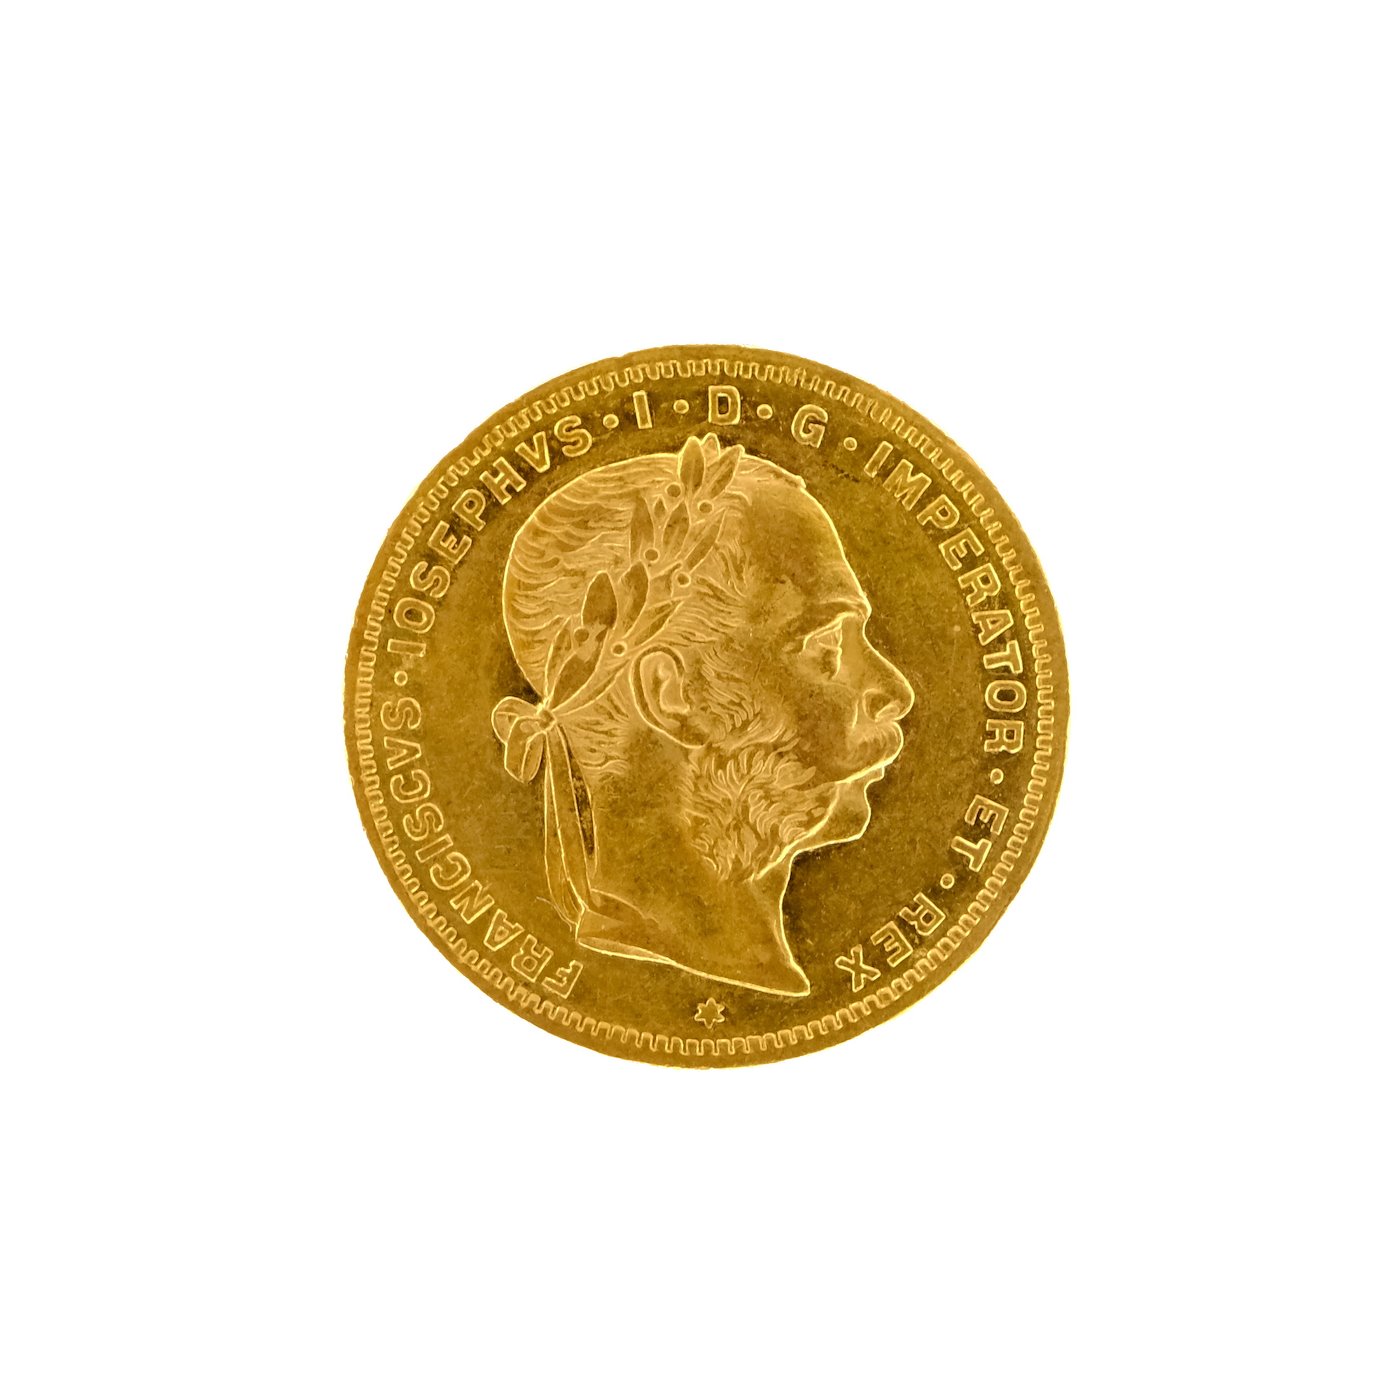 .. - Rakousko Uhersko zlatý 8 zlatník originální ražba 1884 rakouský, zlato 900/1000, hrubá hmotnost 6,42 g